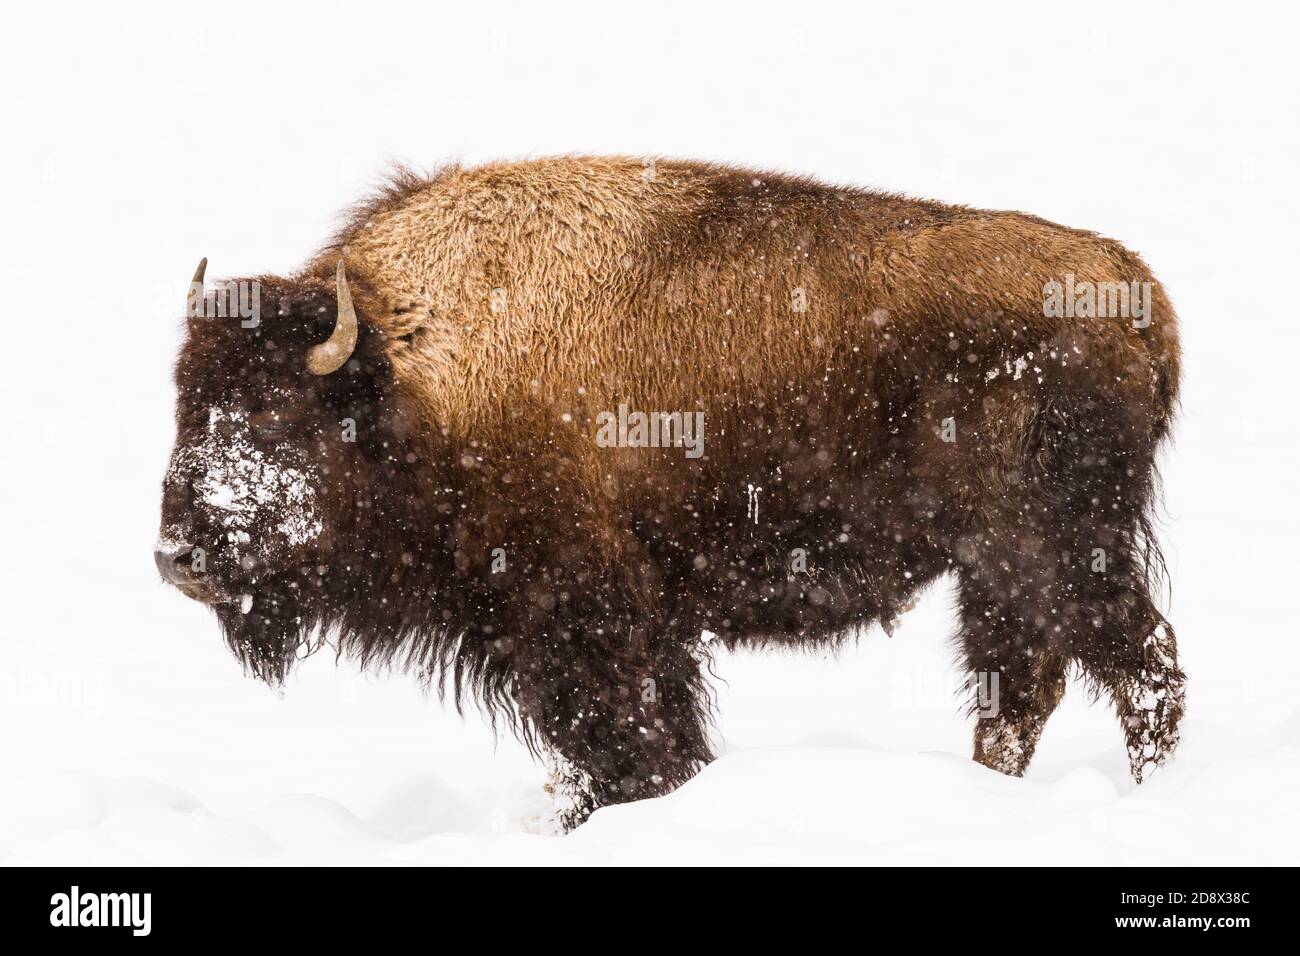 Un bisonte americano en una tormenta de nieve en el Parque Nacional Yellowstone, Wyoming, EE.UU. Foto de stock